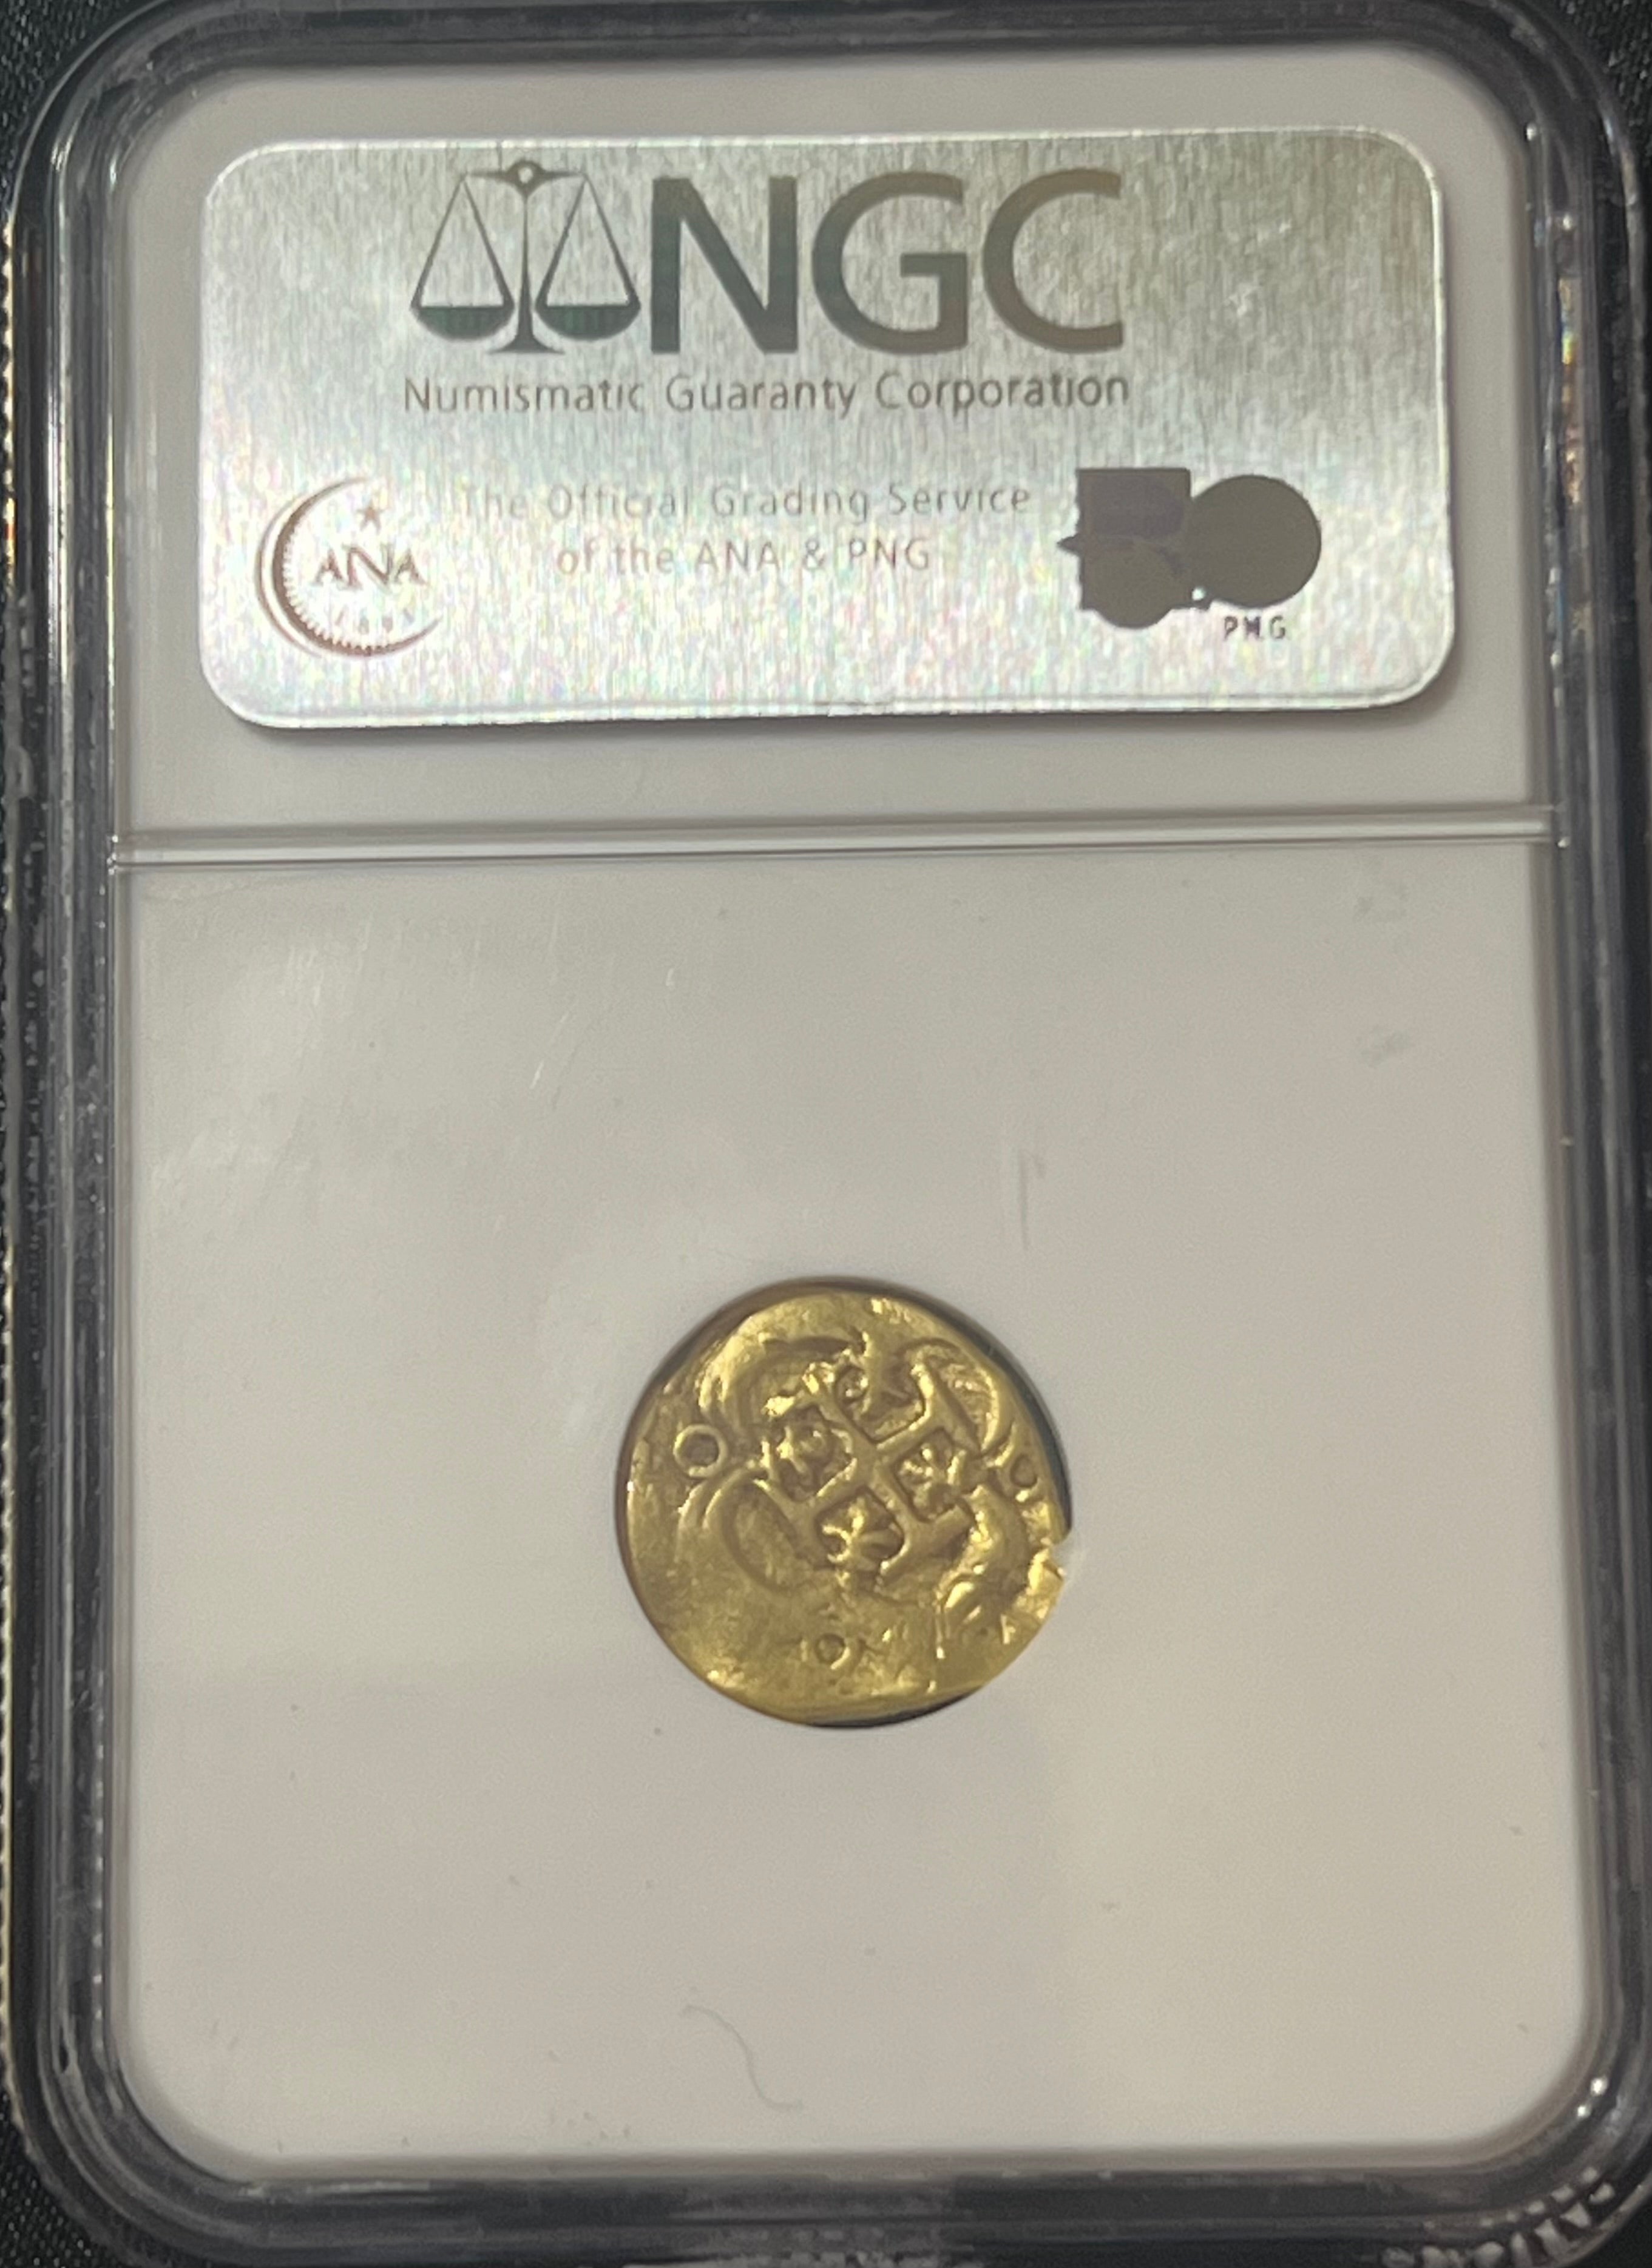 1 Escudo Spain Gold Coin NGC Grade F 15